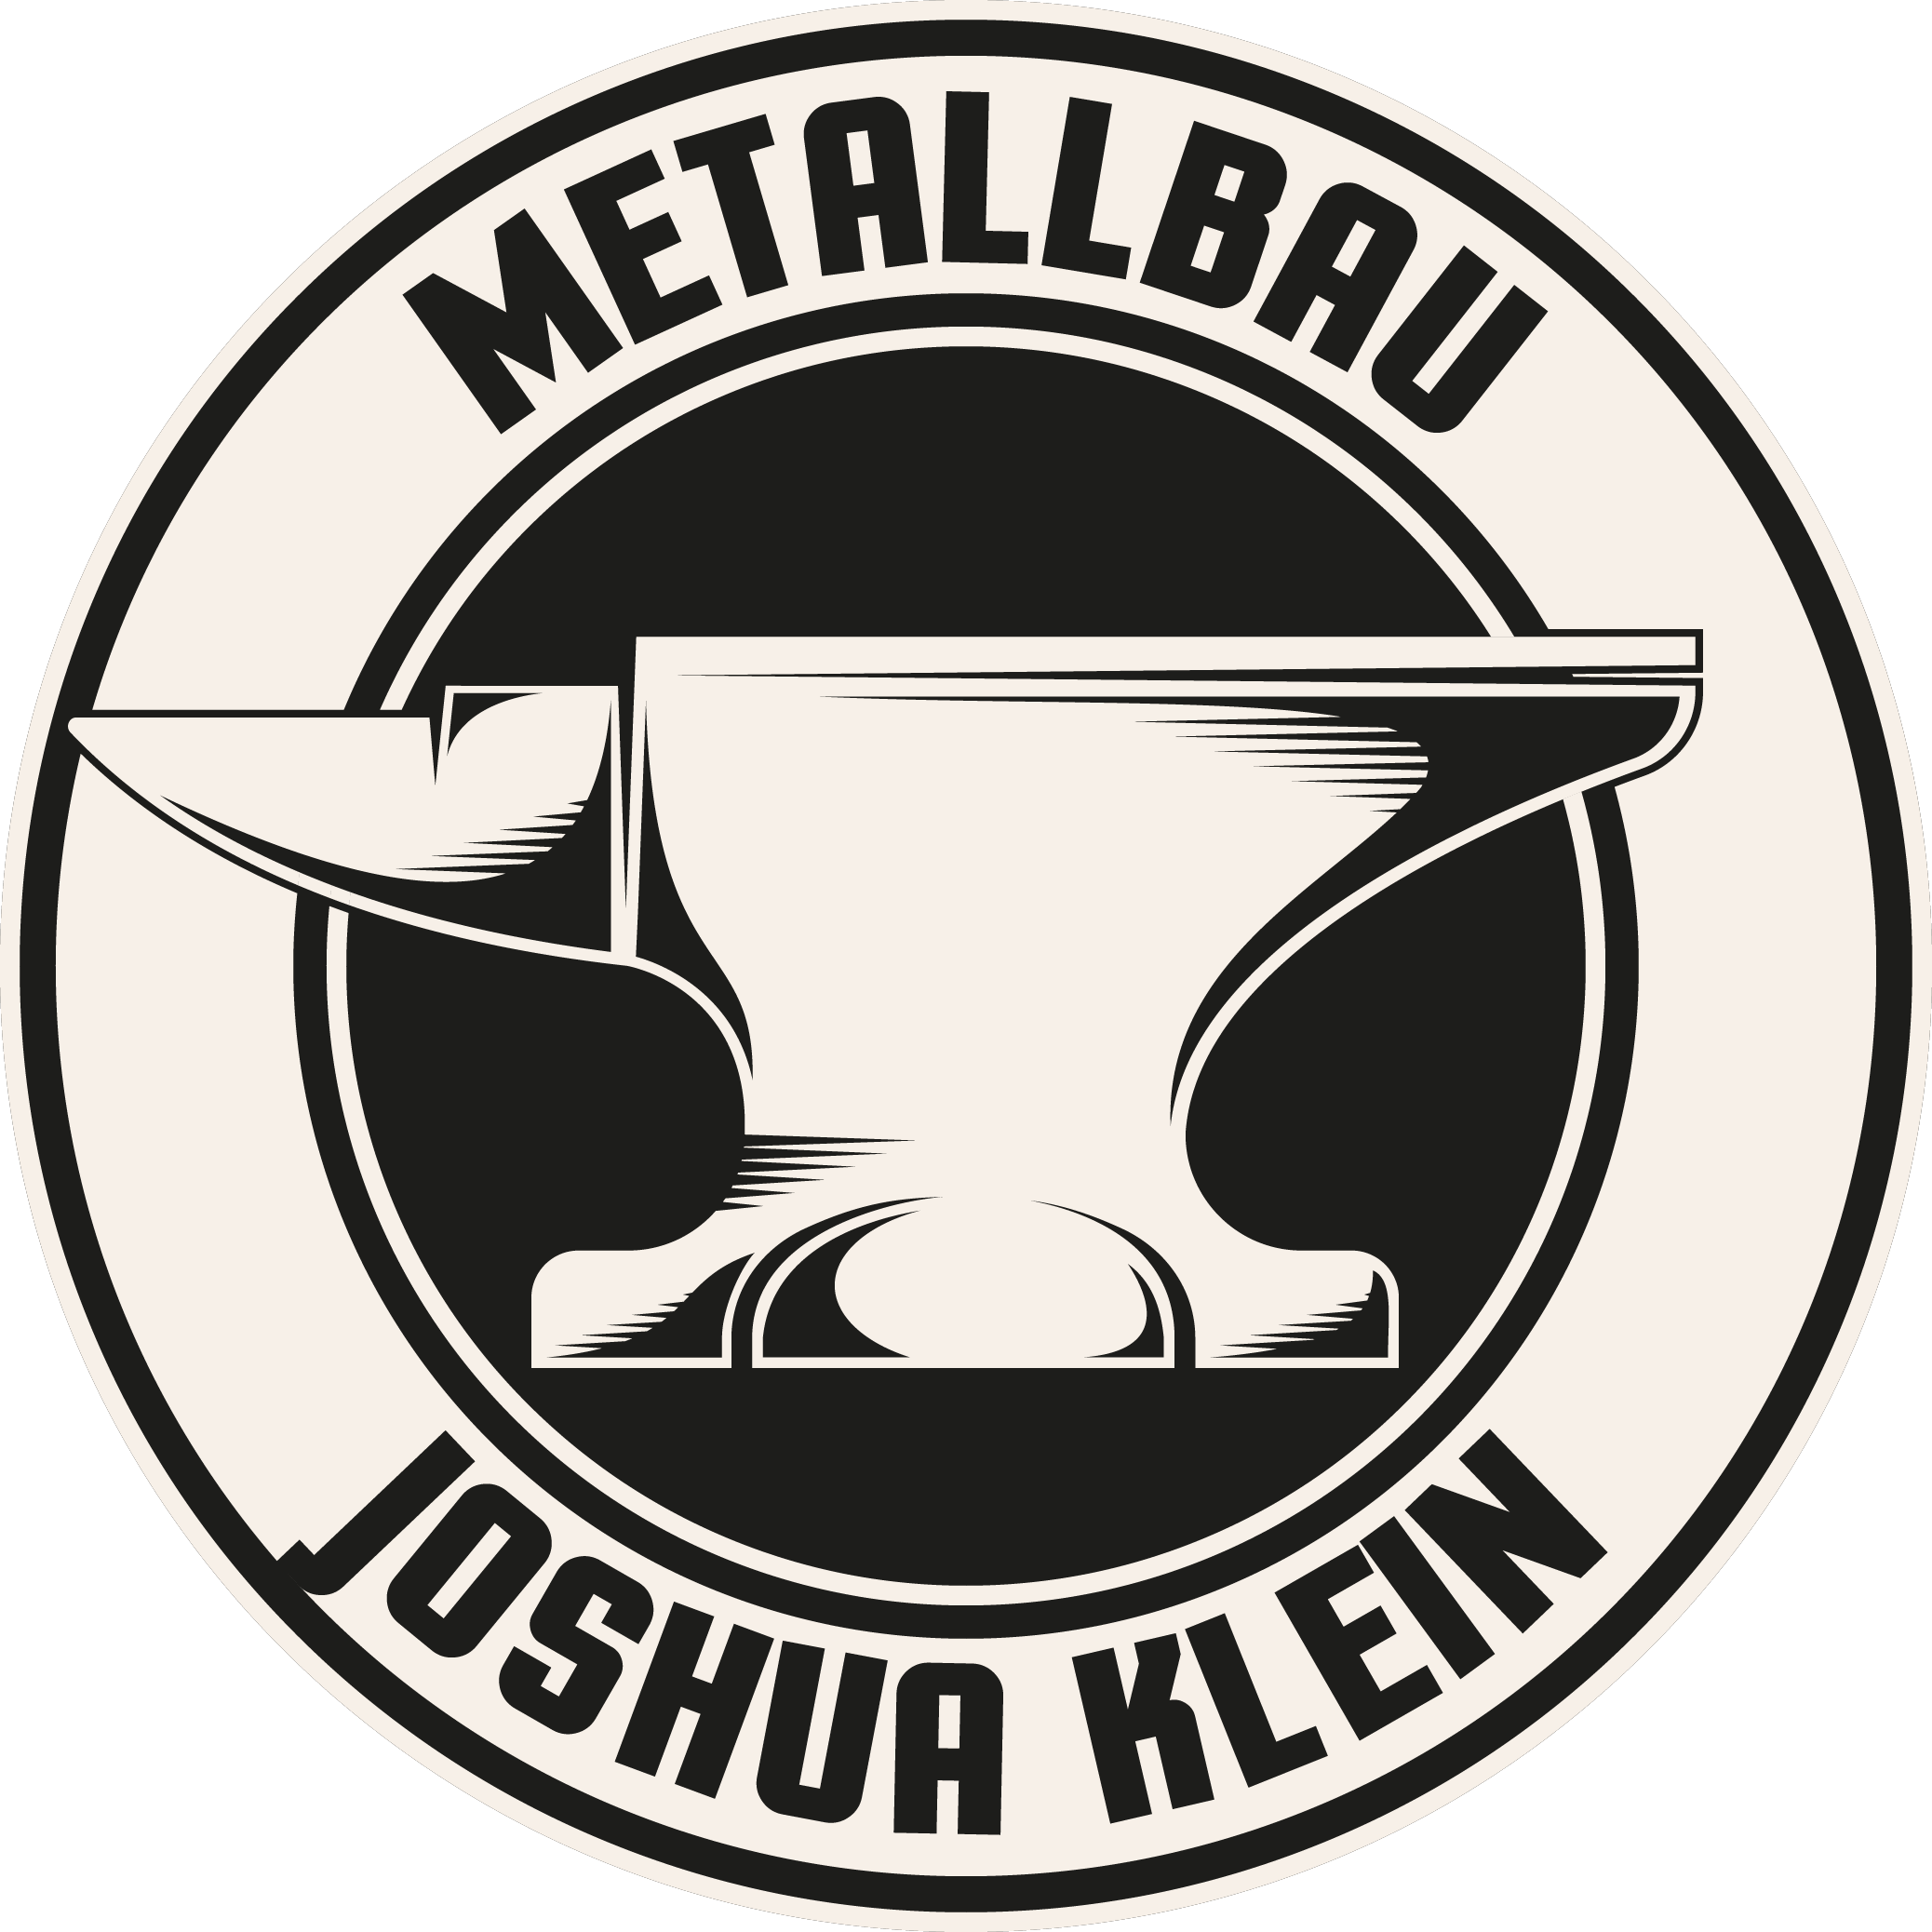 Metallbau Joshua Klein Schweinfurt